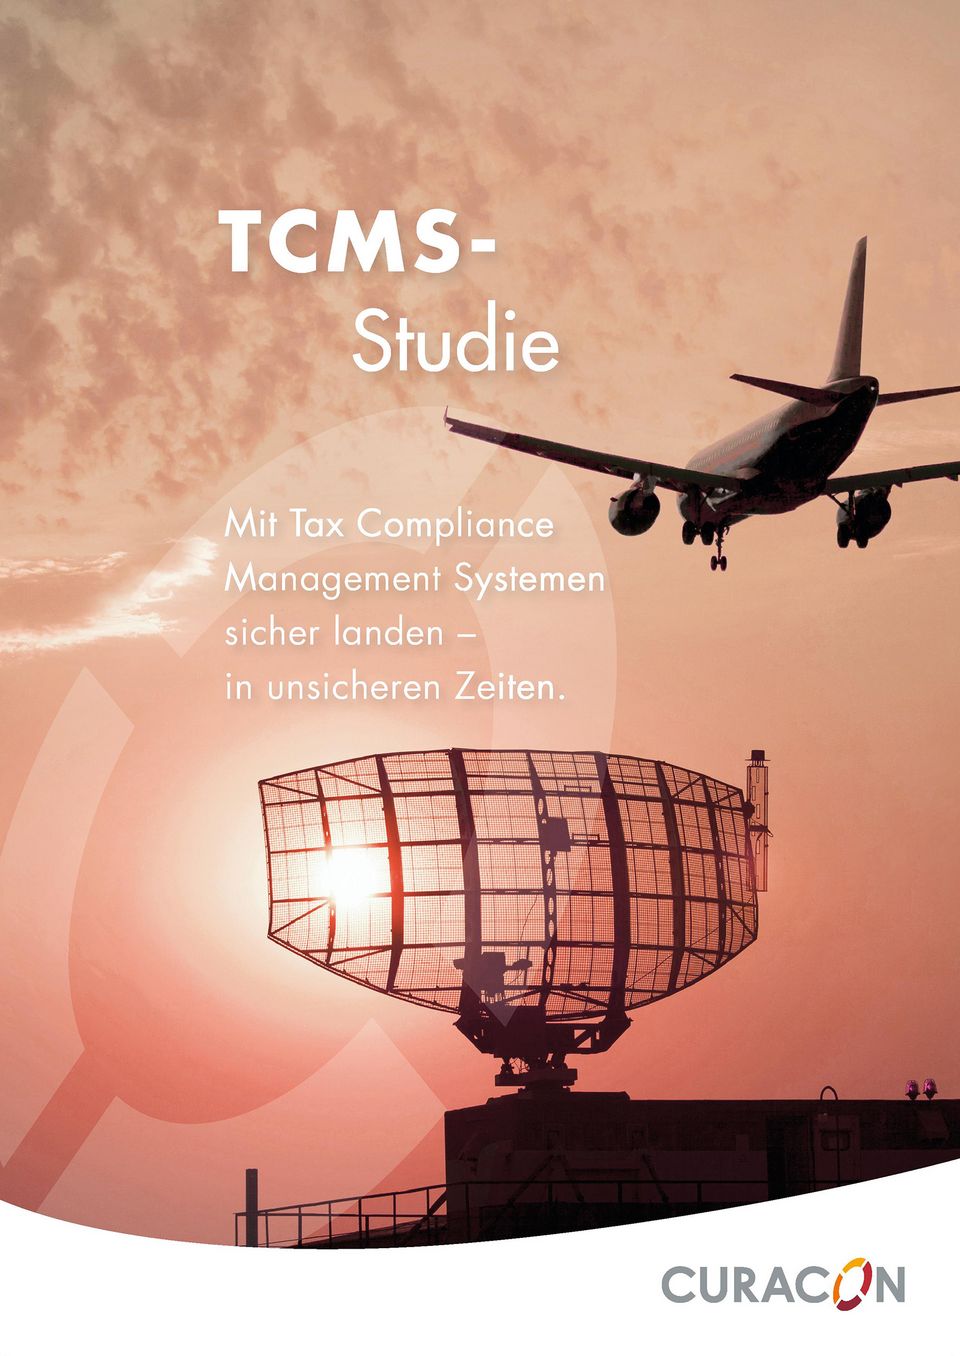 Titelbild der TCMS-Studie